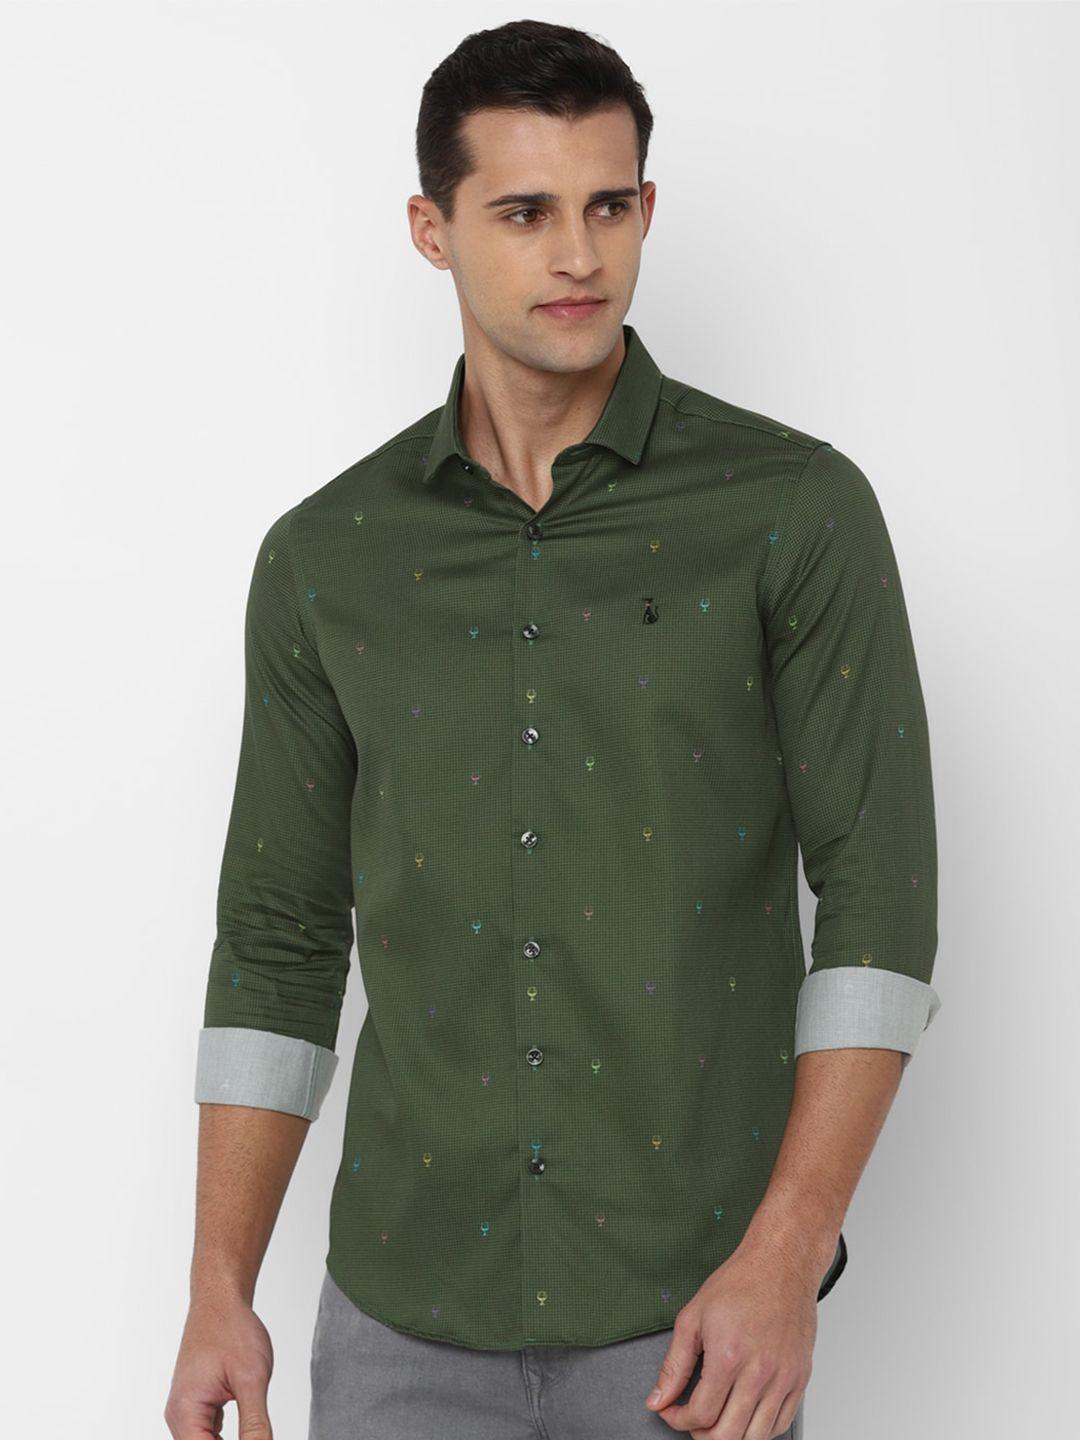 simon carter london men olive green slim fit printed casual shirt